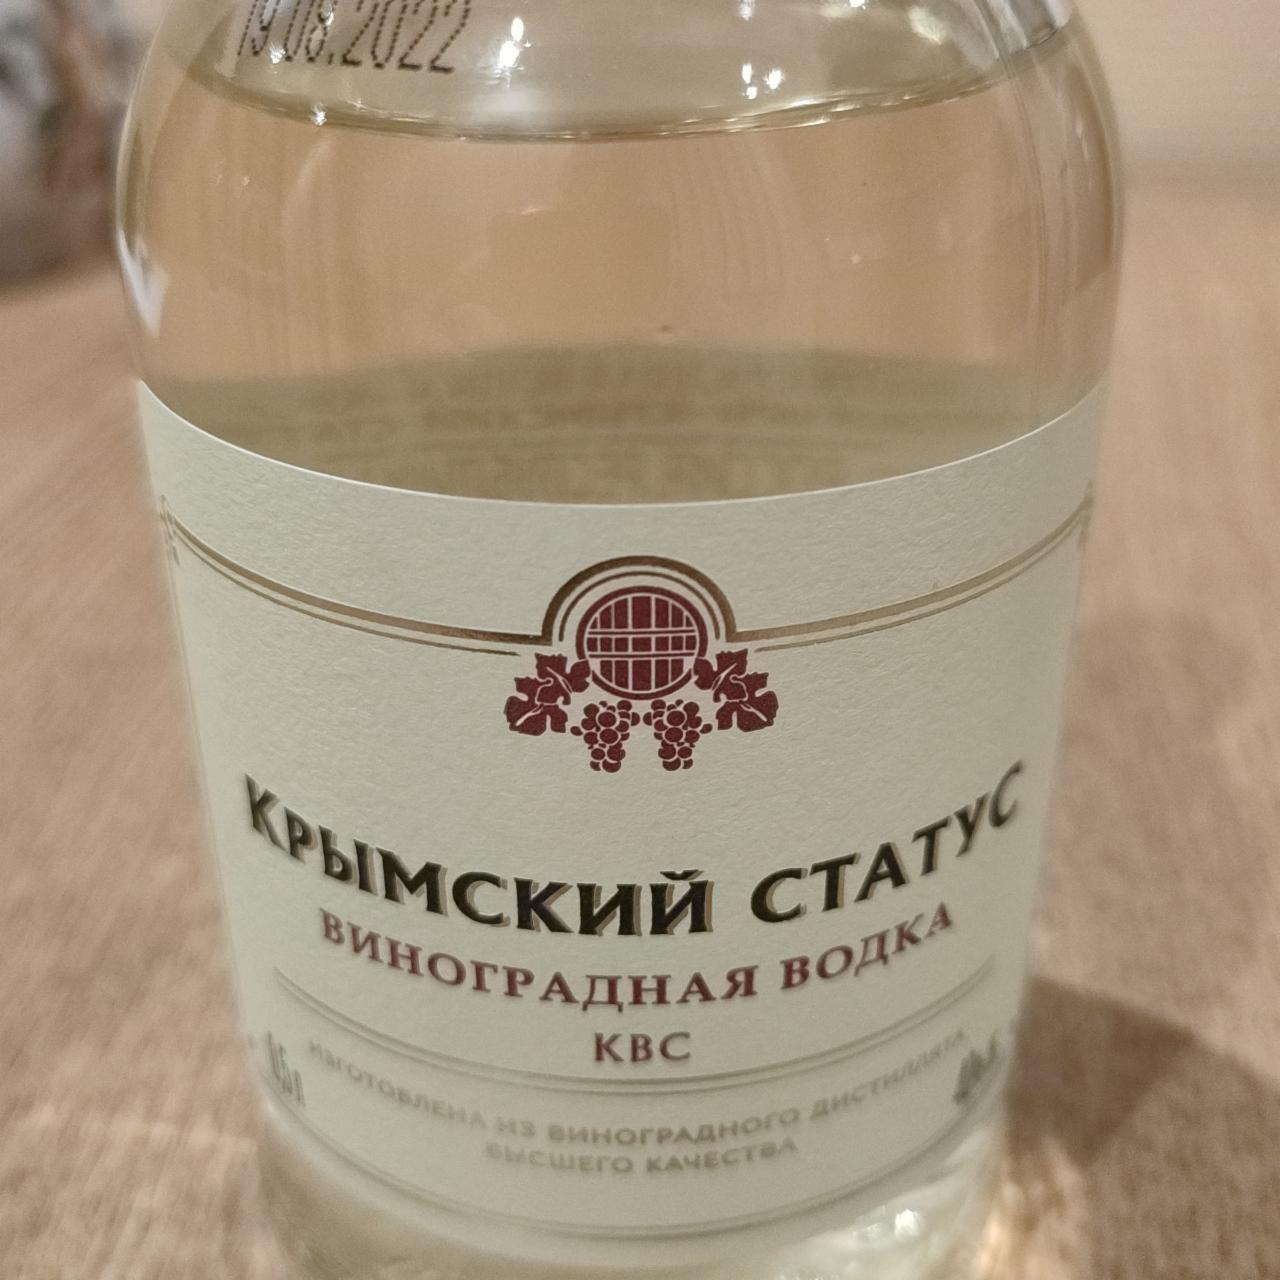 Фото - Виноградная водка КВС Крымский статус